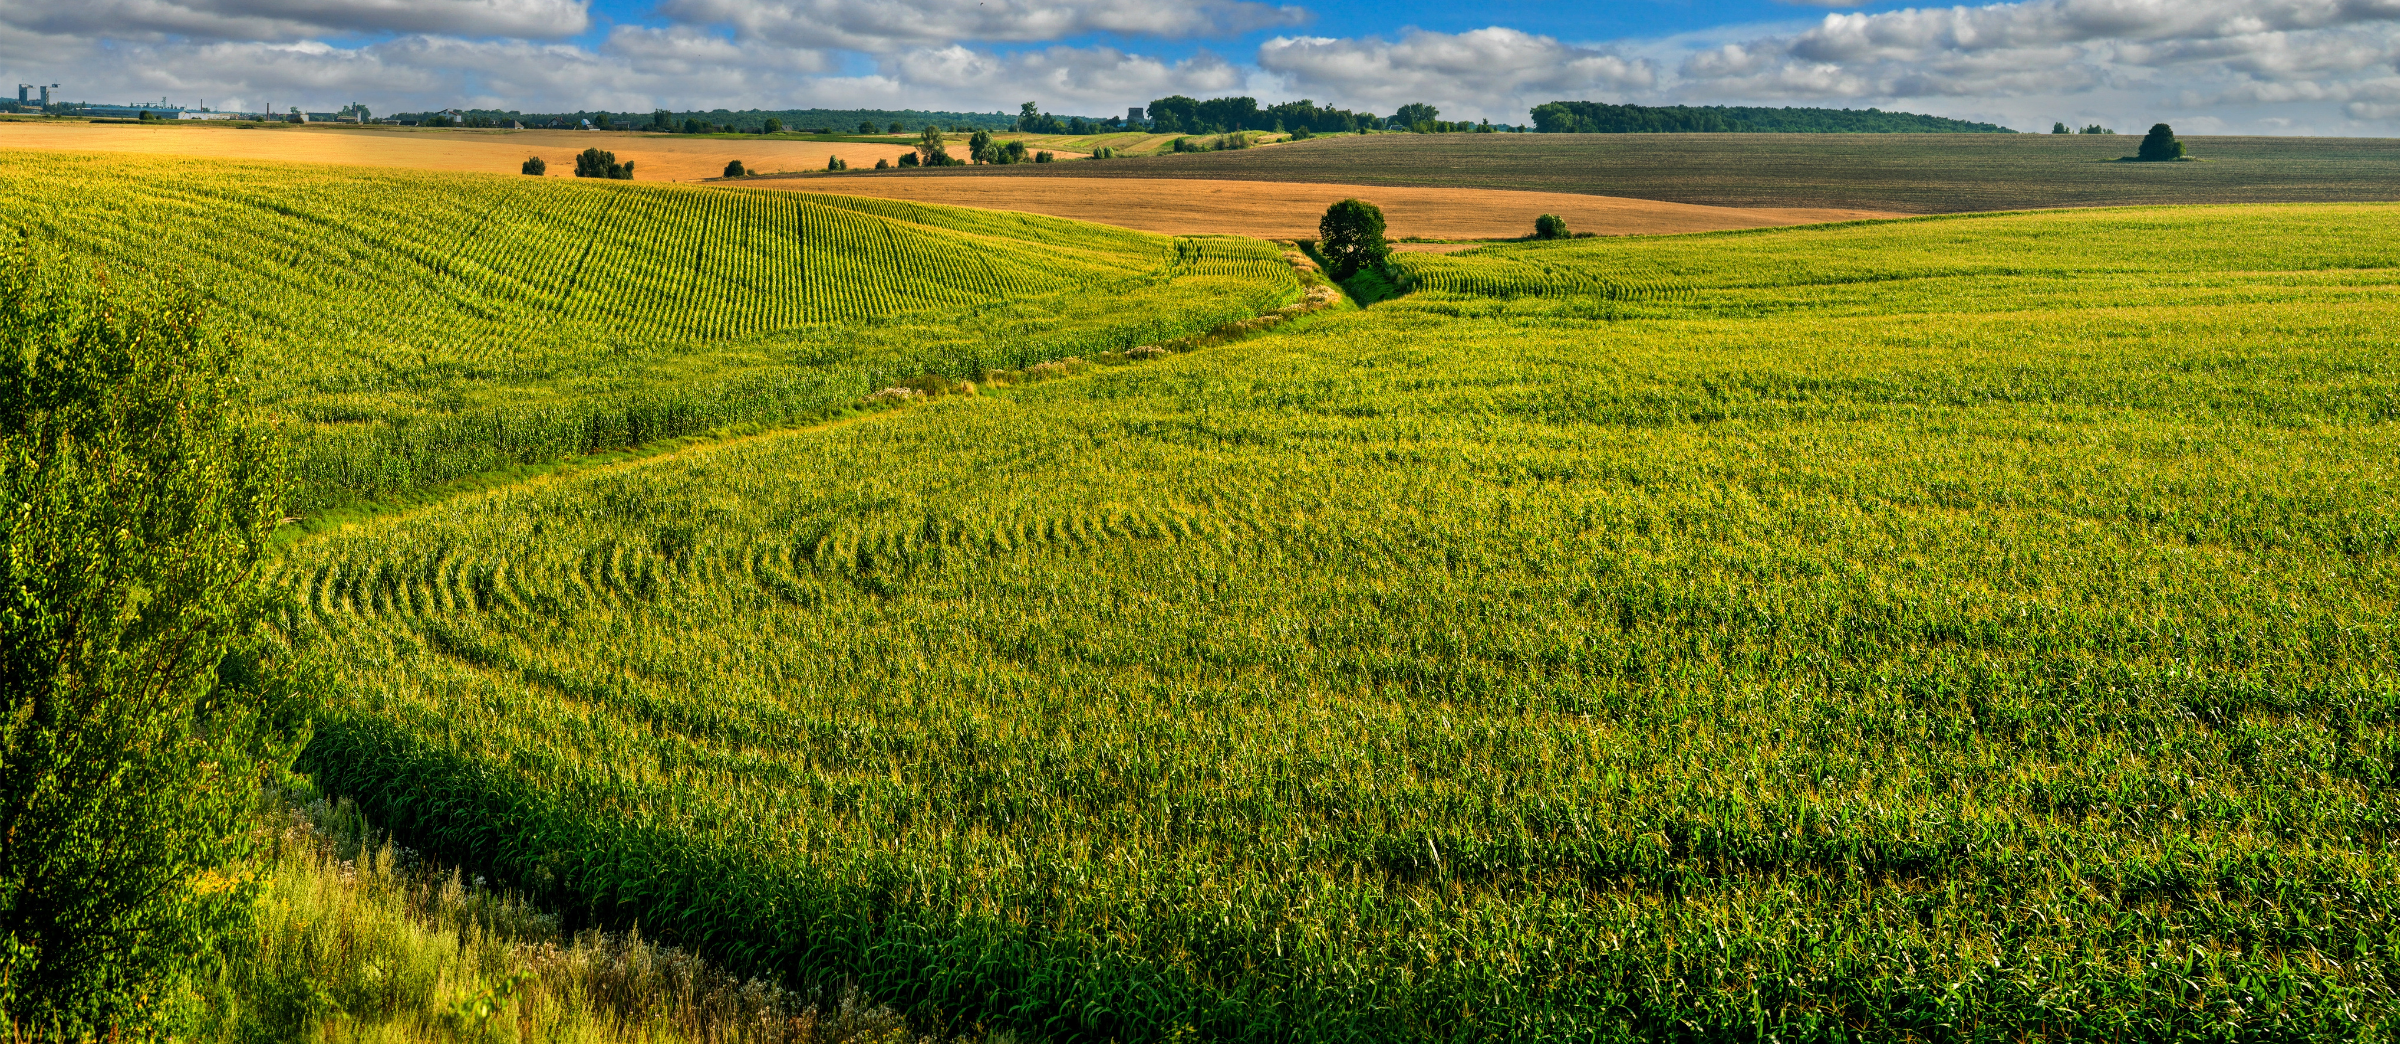 Landscape scene of corn field